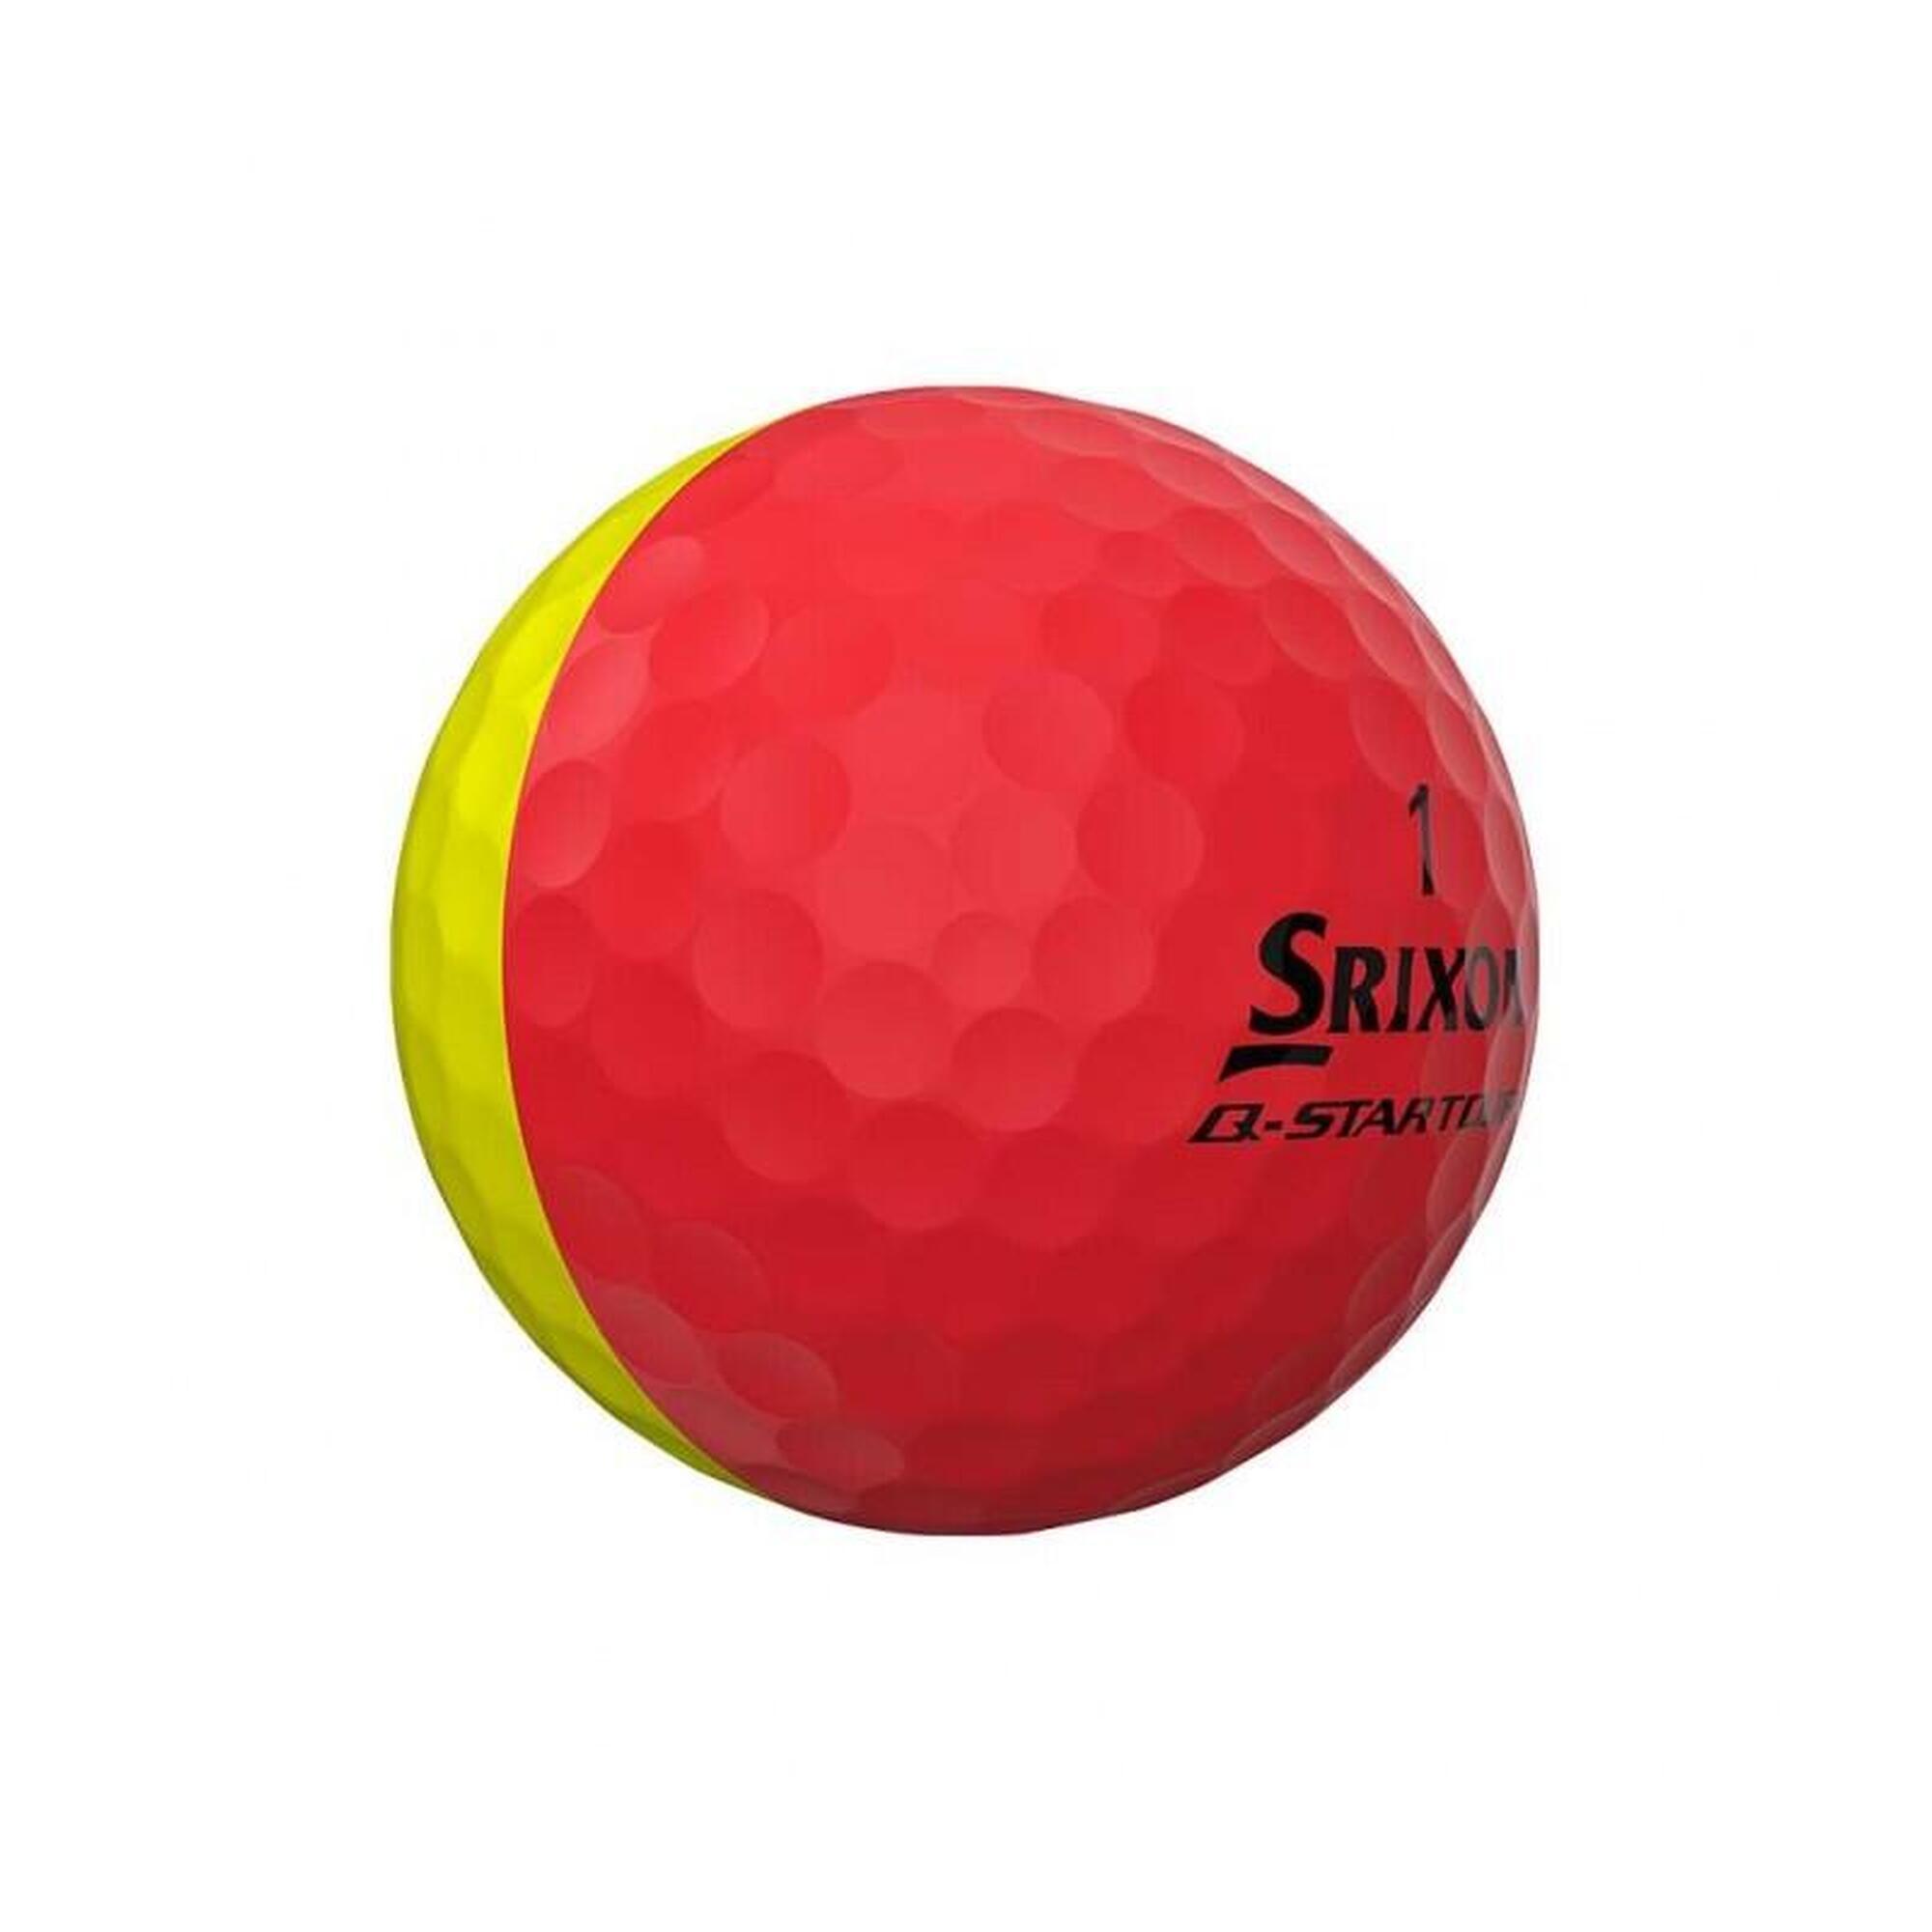 Doos met 12 Srixon Q-Star Tour DIVIDE-golfballen